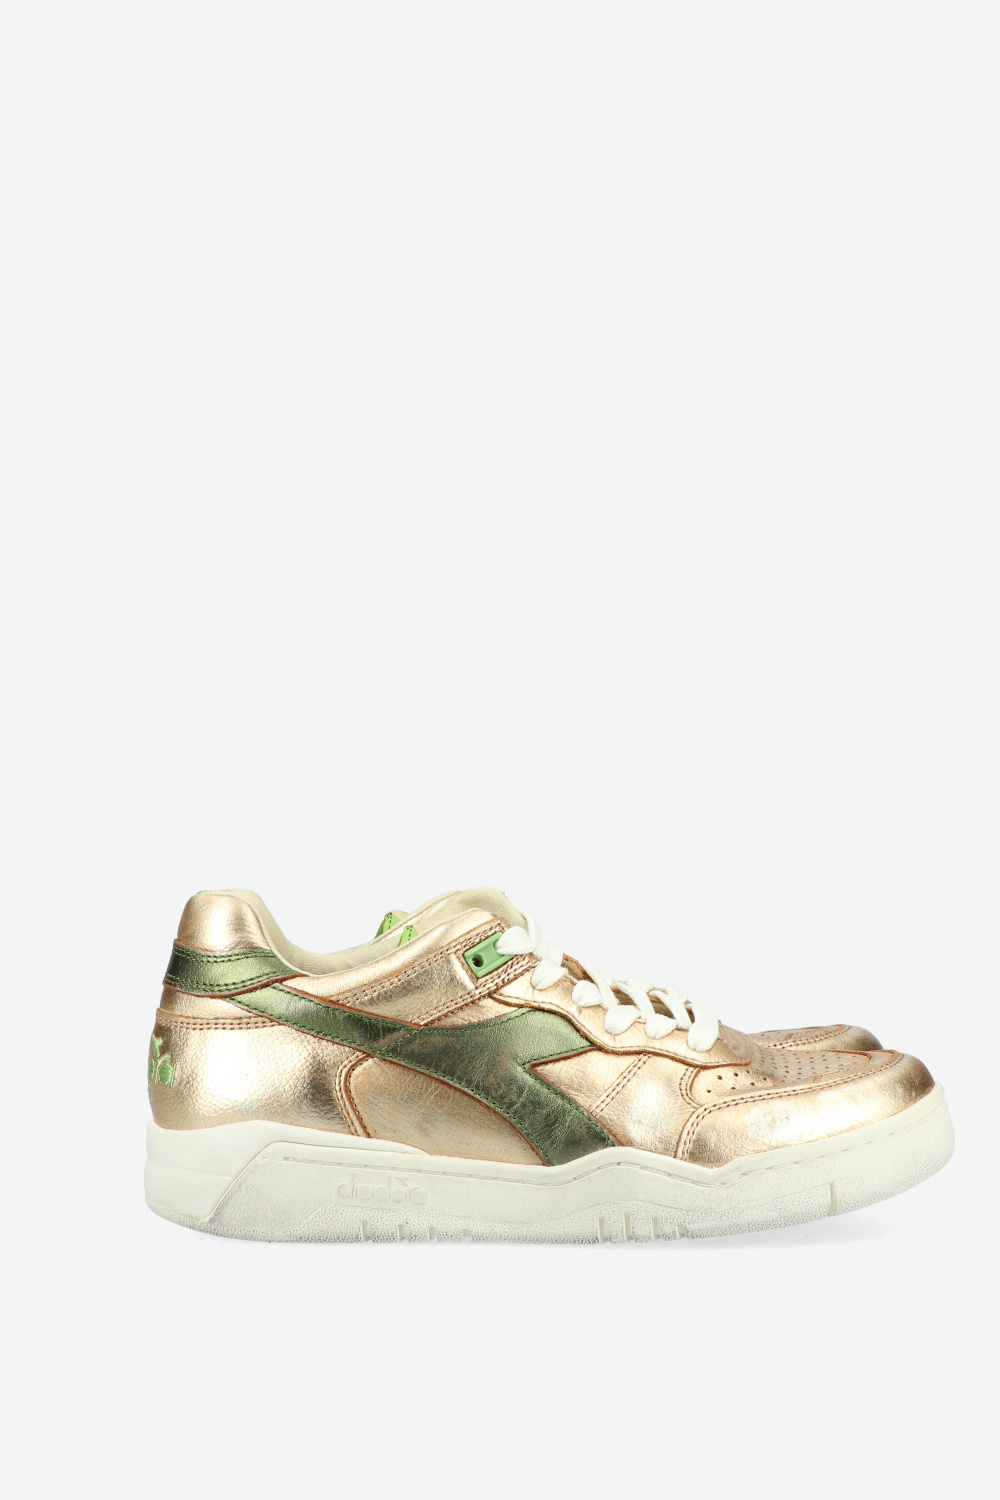 Diadora Sneakers Gold